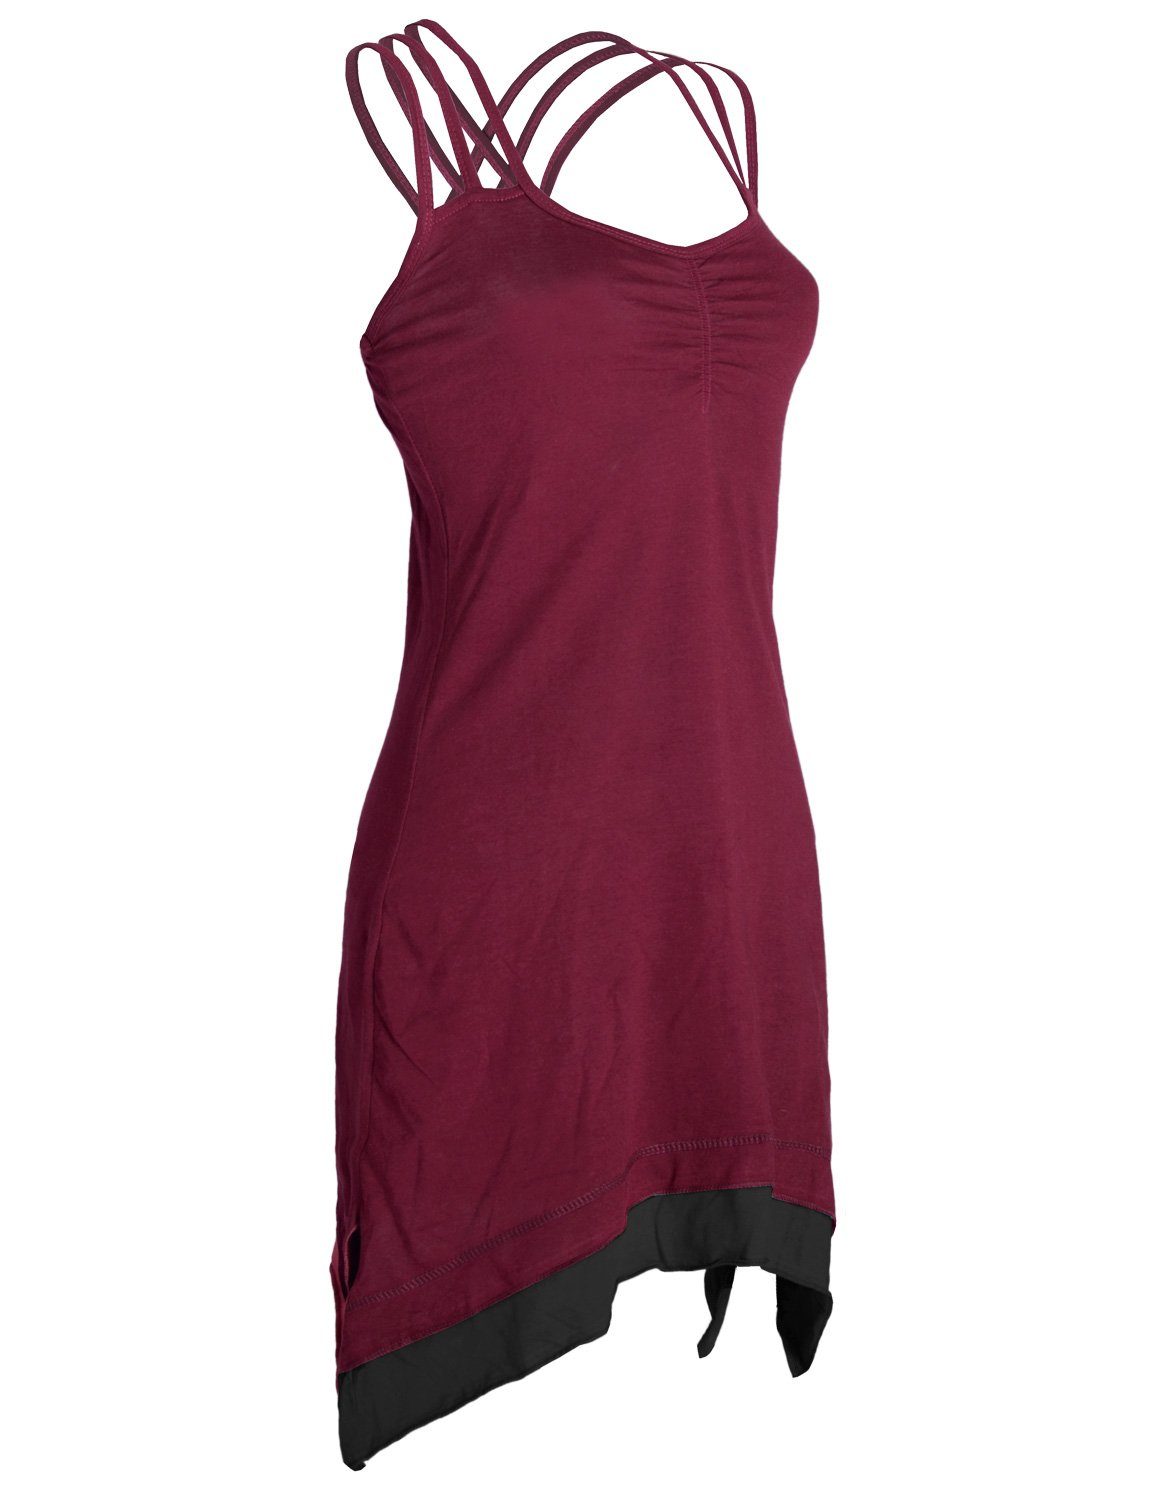 Vishes Sommerkleid Lagenlook Trägerkleid Style Zipfeln Organic Cotton mit Elfen, dunkelrot Boho Hippie